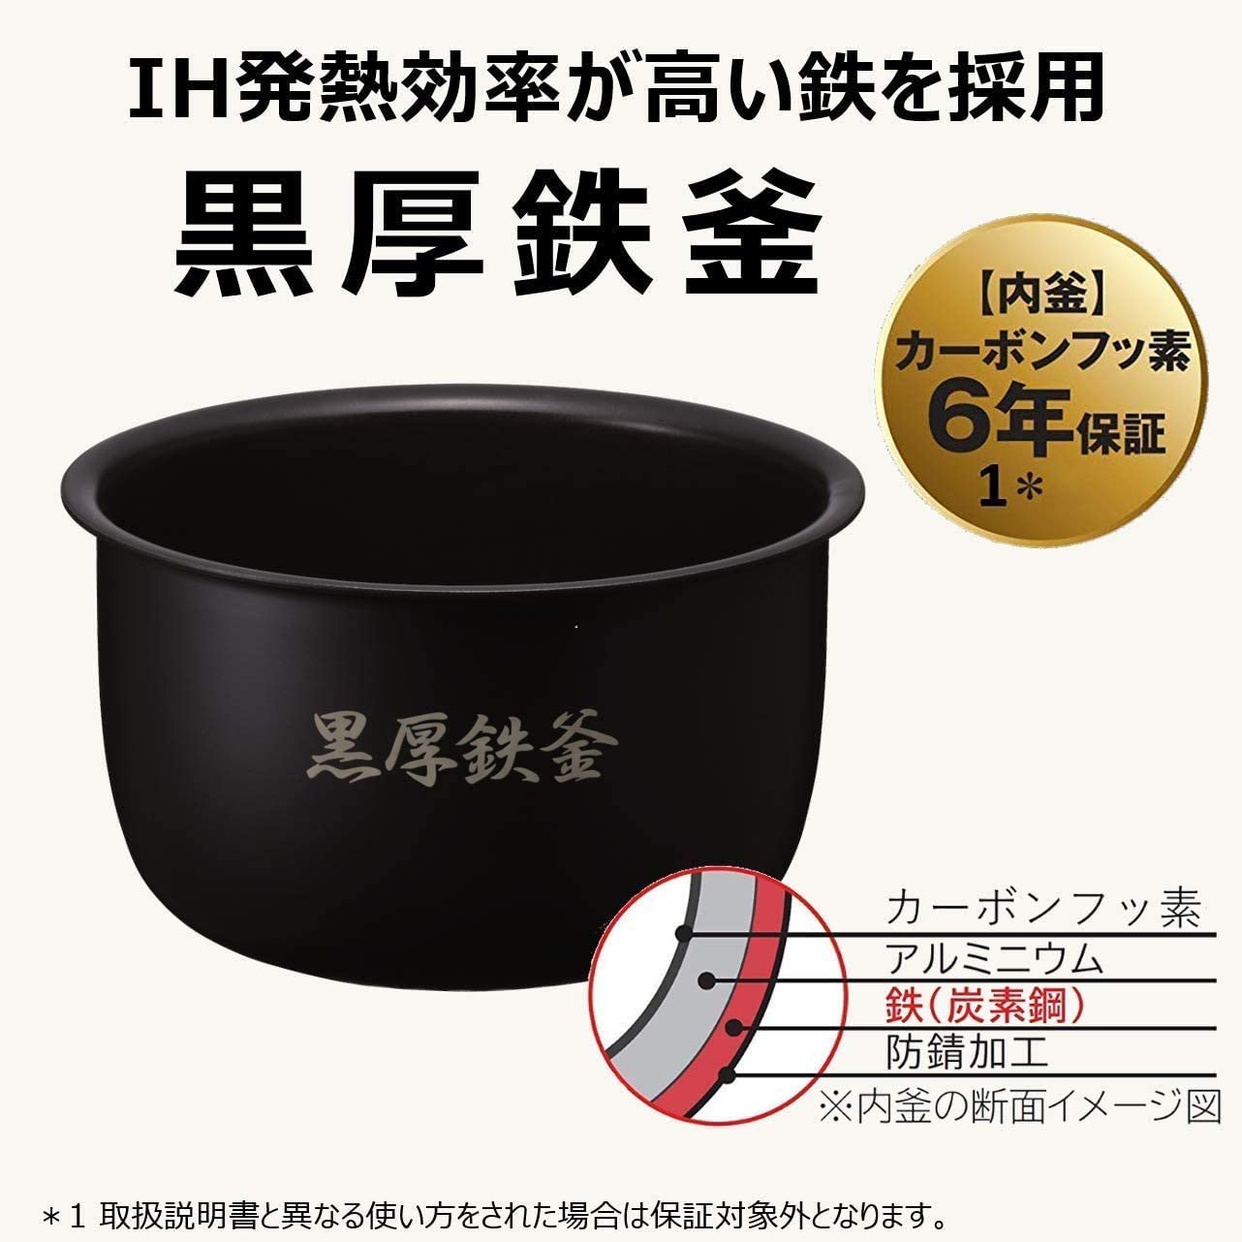 日立(HITACHI) 圧力スチーム炊き ふっくら御膳 RZ-AX10Mの商品画像4 